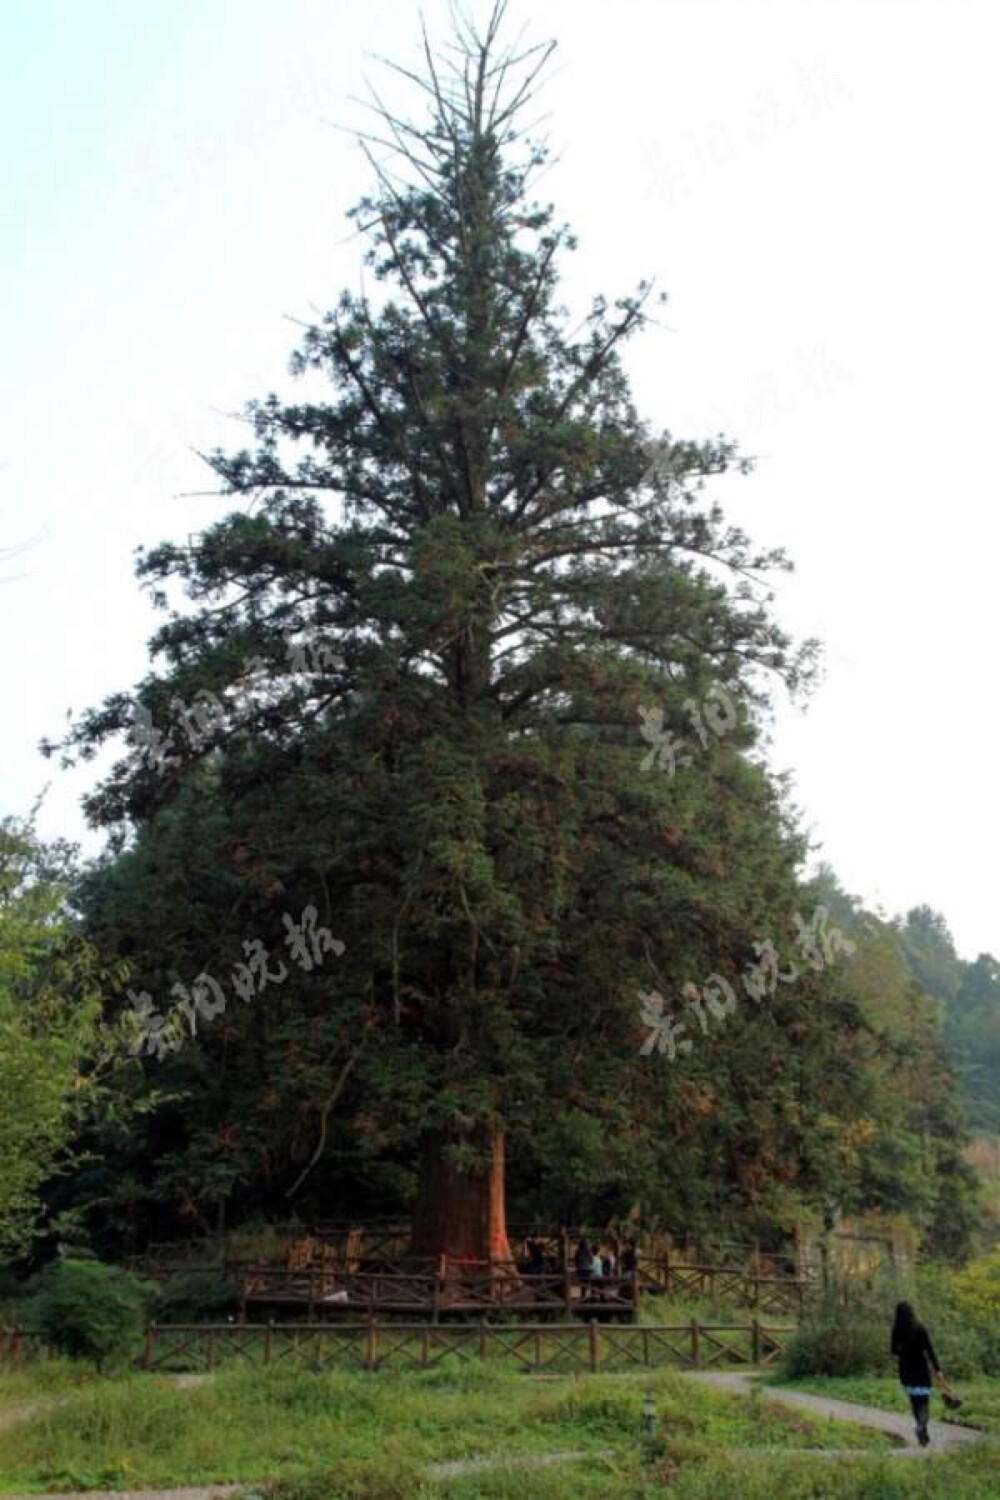 被誉为中国杉王的这棵大杉树,生长在习水县城外约9公里外的山区